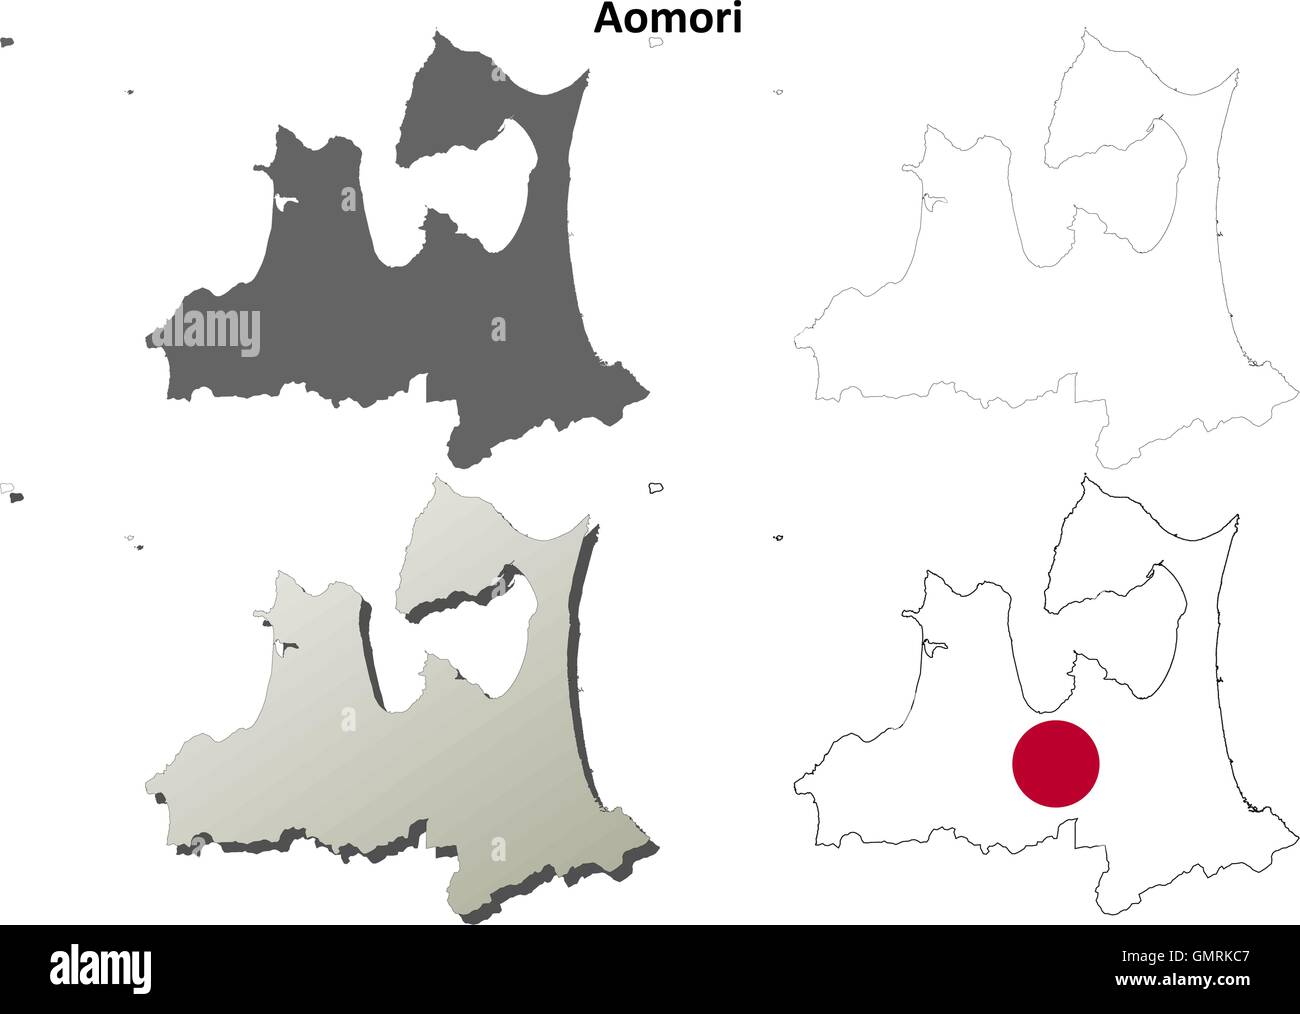 Aomori blank outline map set Stock Vector